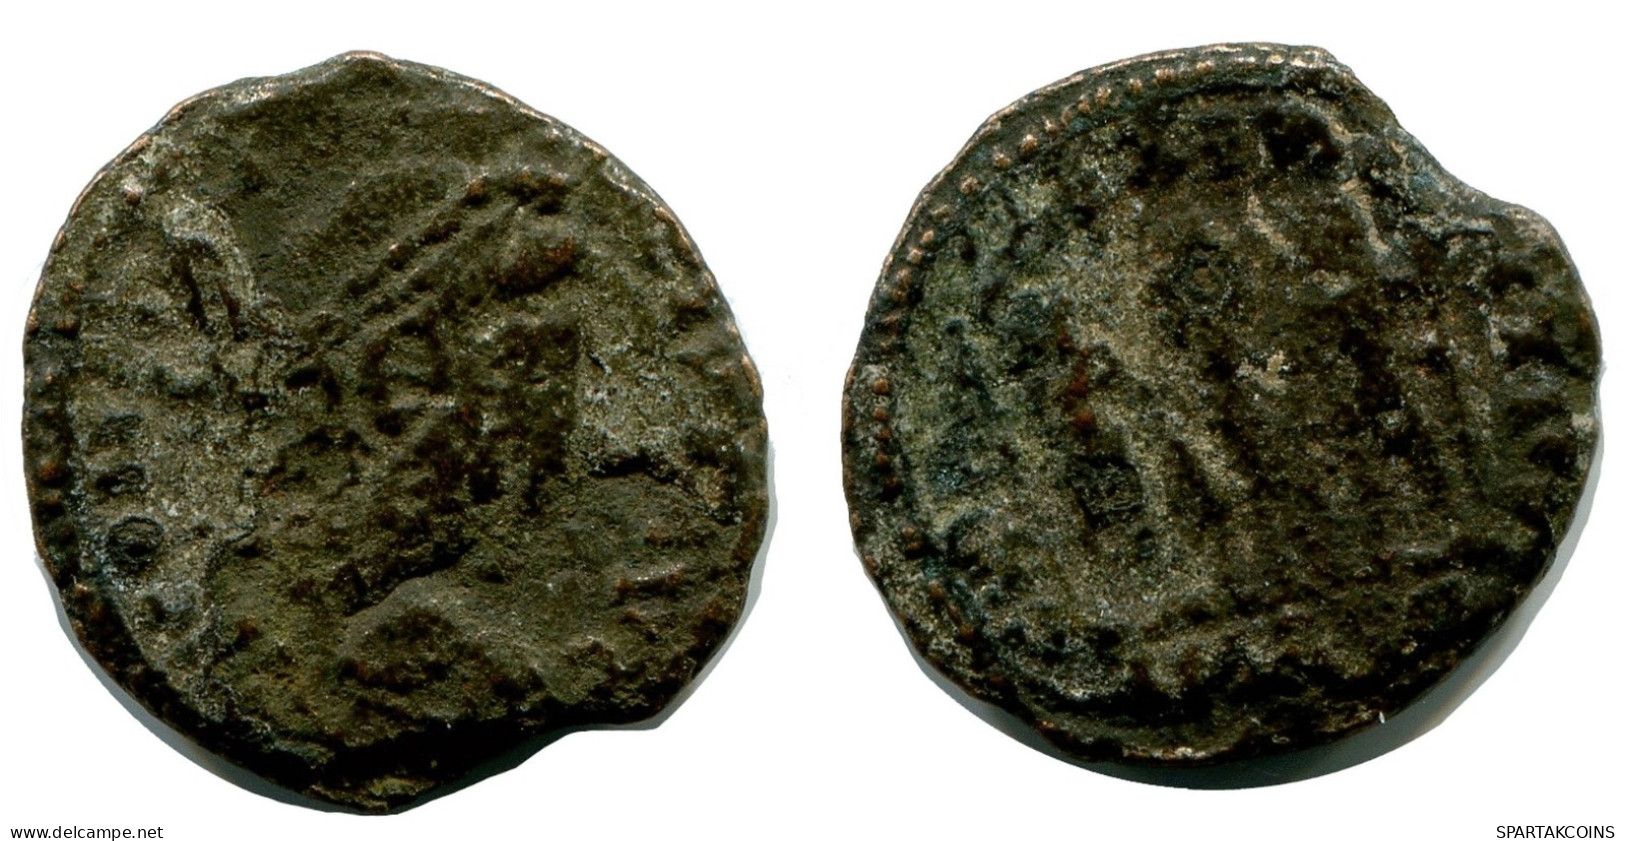 ROMAN Coin MINTED IN ALEKSANDRIA FOUND IN IHNASYAH HOARD EGYPT #ANC10172.14.U.A - Der Christlischen Kaiser (307 / 363)